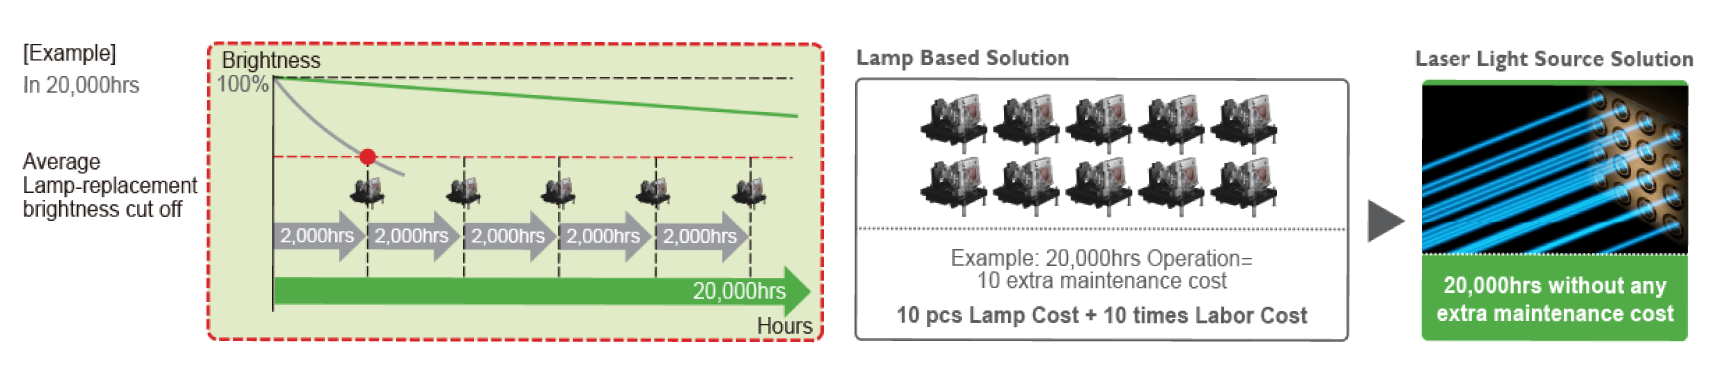 I proiettori laser BlueCore di BenQ garantiscono bassi costi di manutenzione